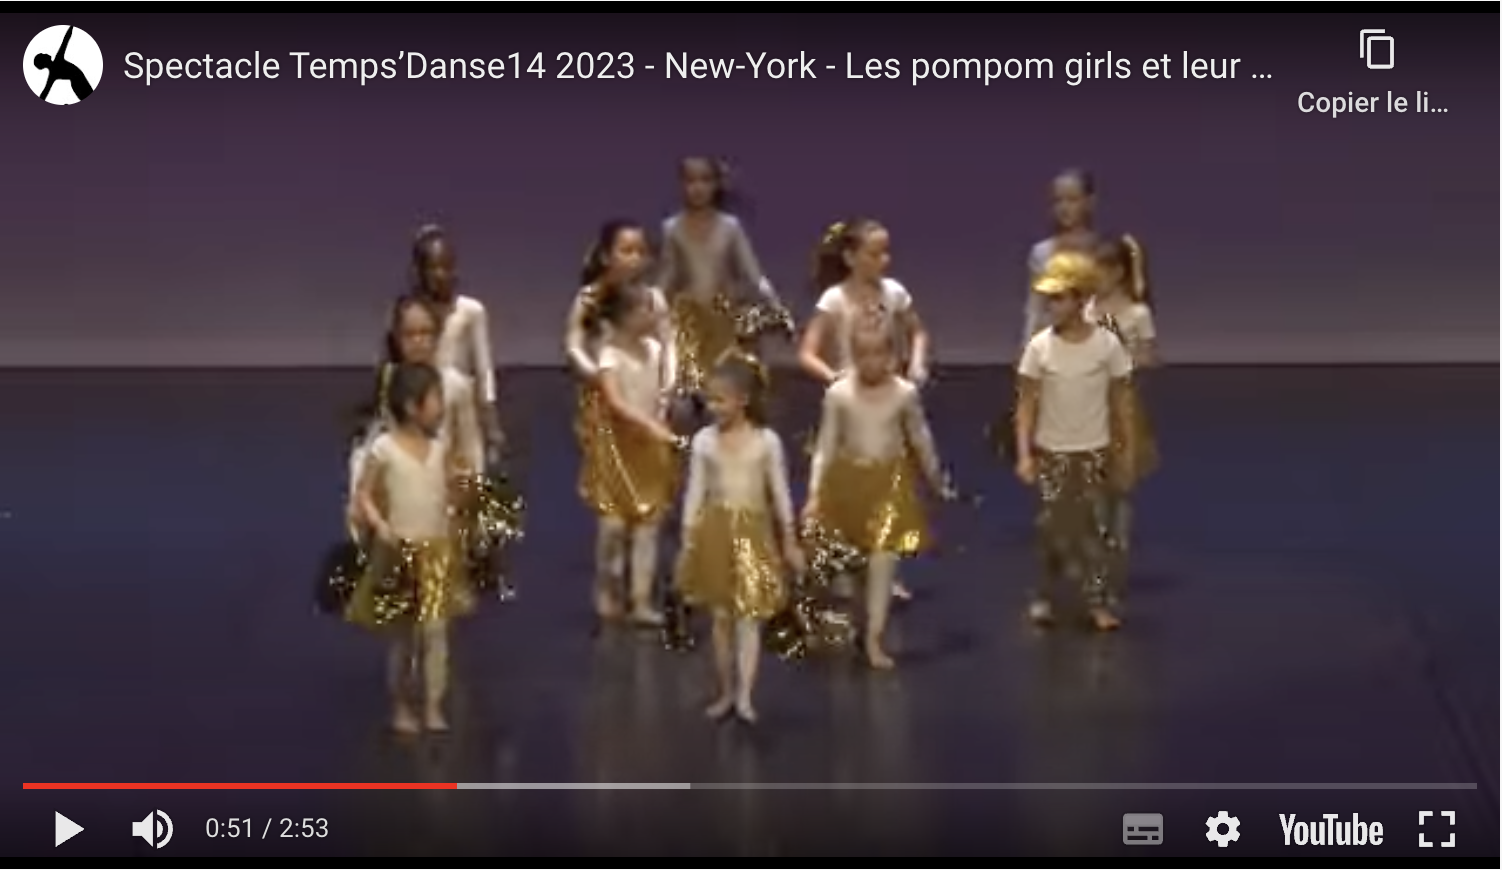 New-York - Les pompom girls et leur mascotte